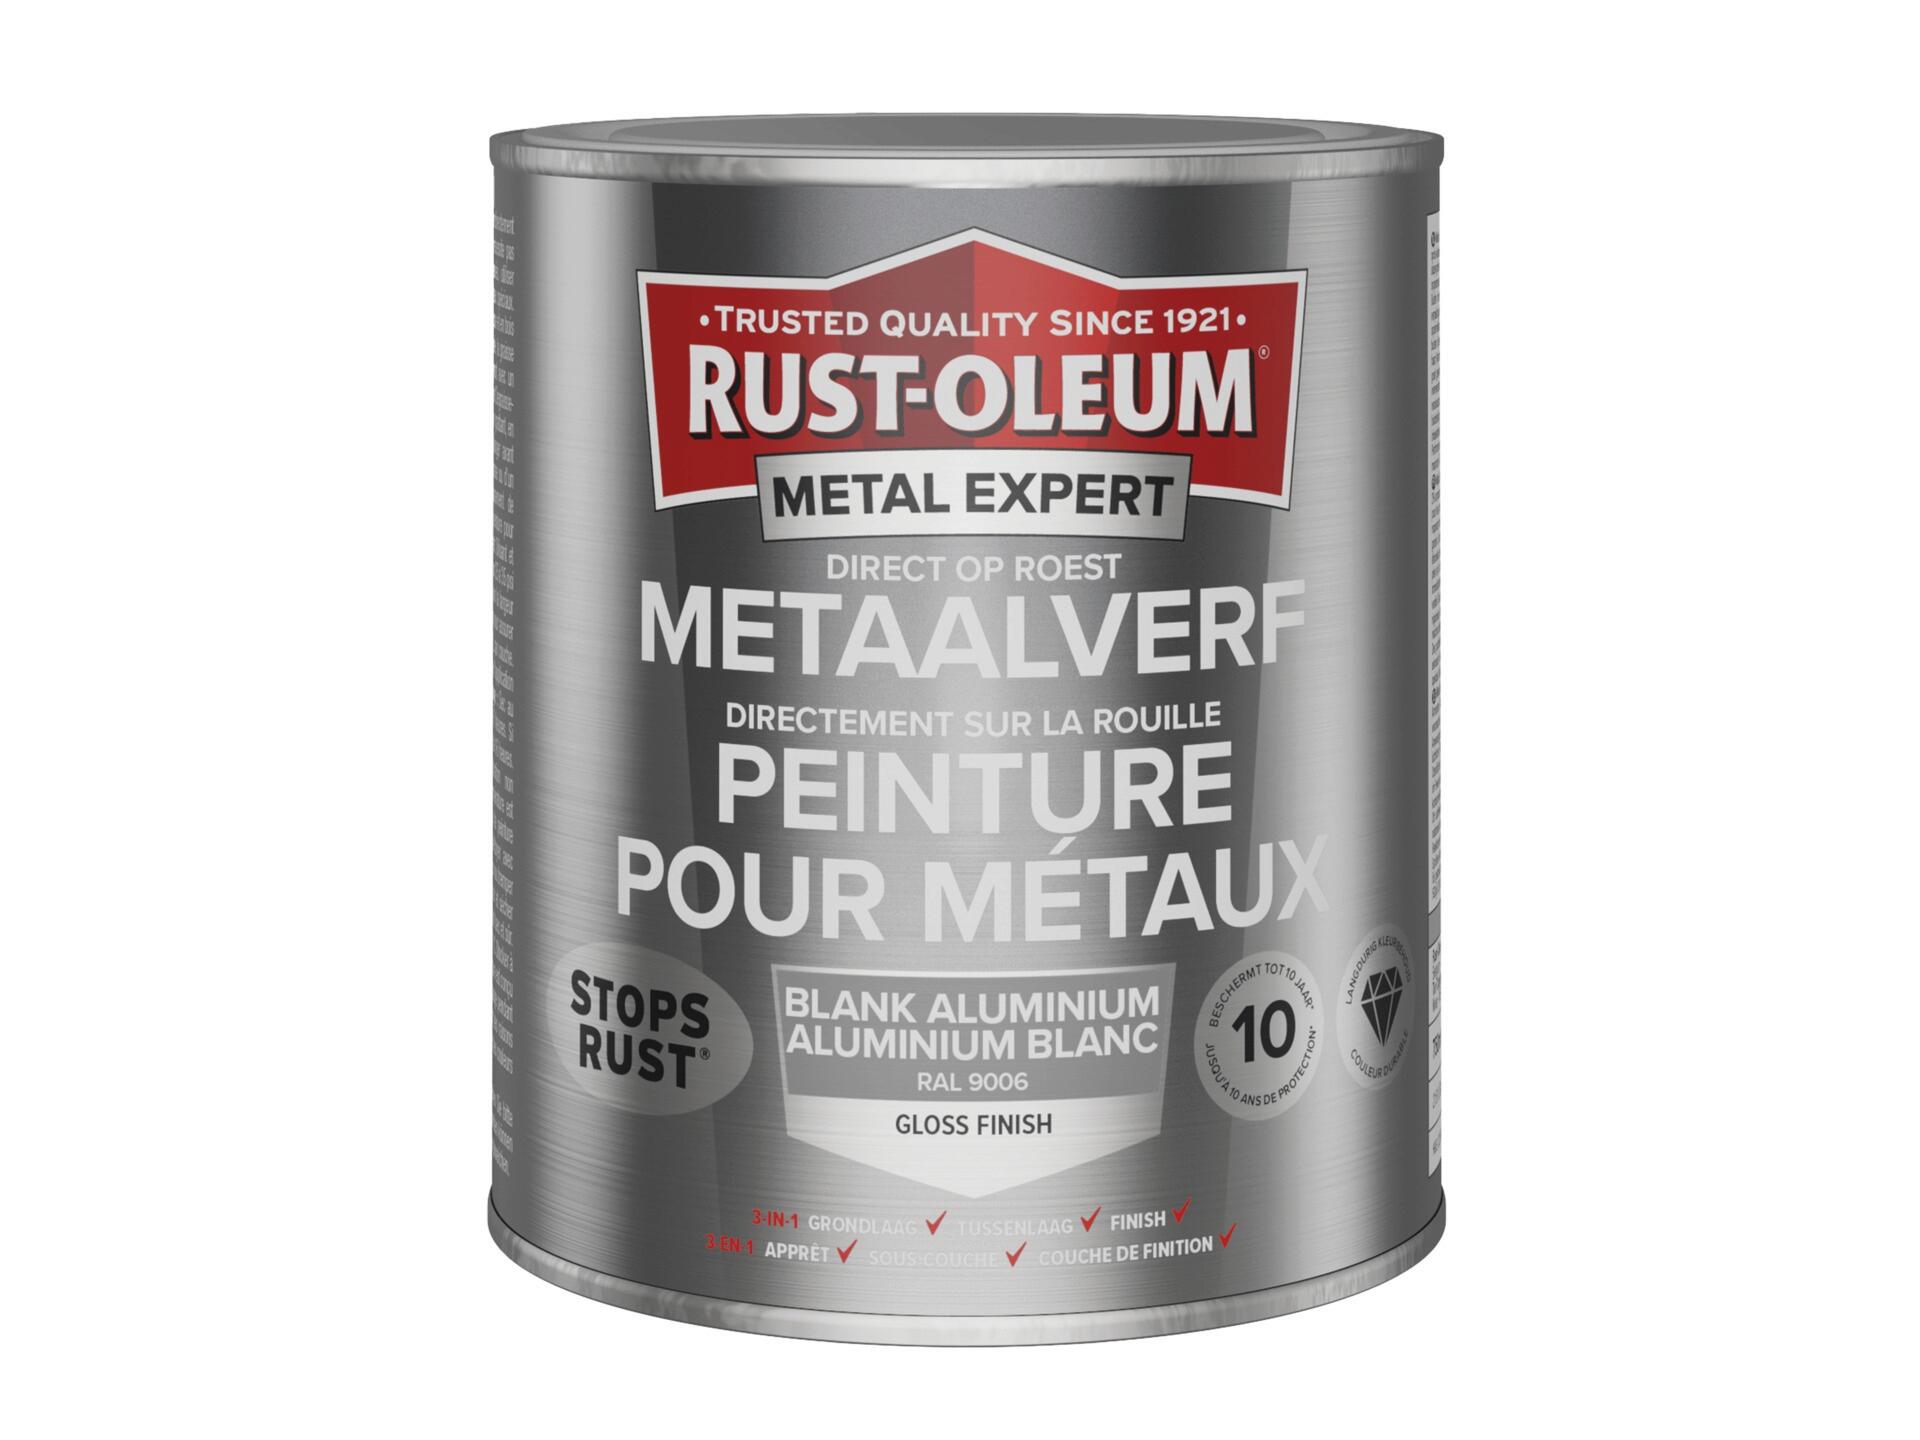 Rust-oleum Metal Expert peinture pour métaux brillant 750ml aluminium blanc